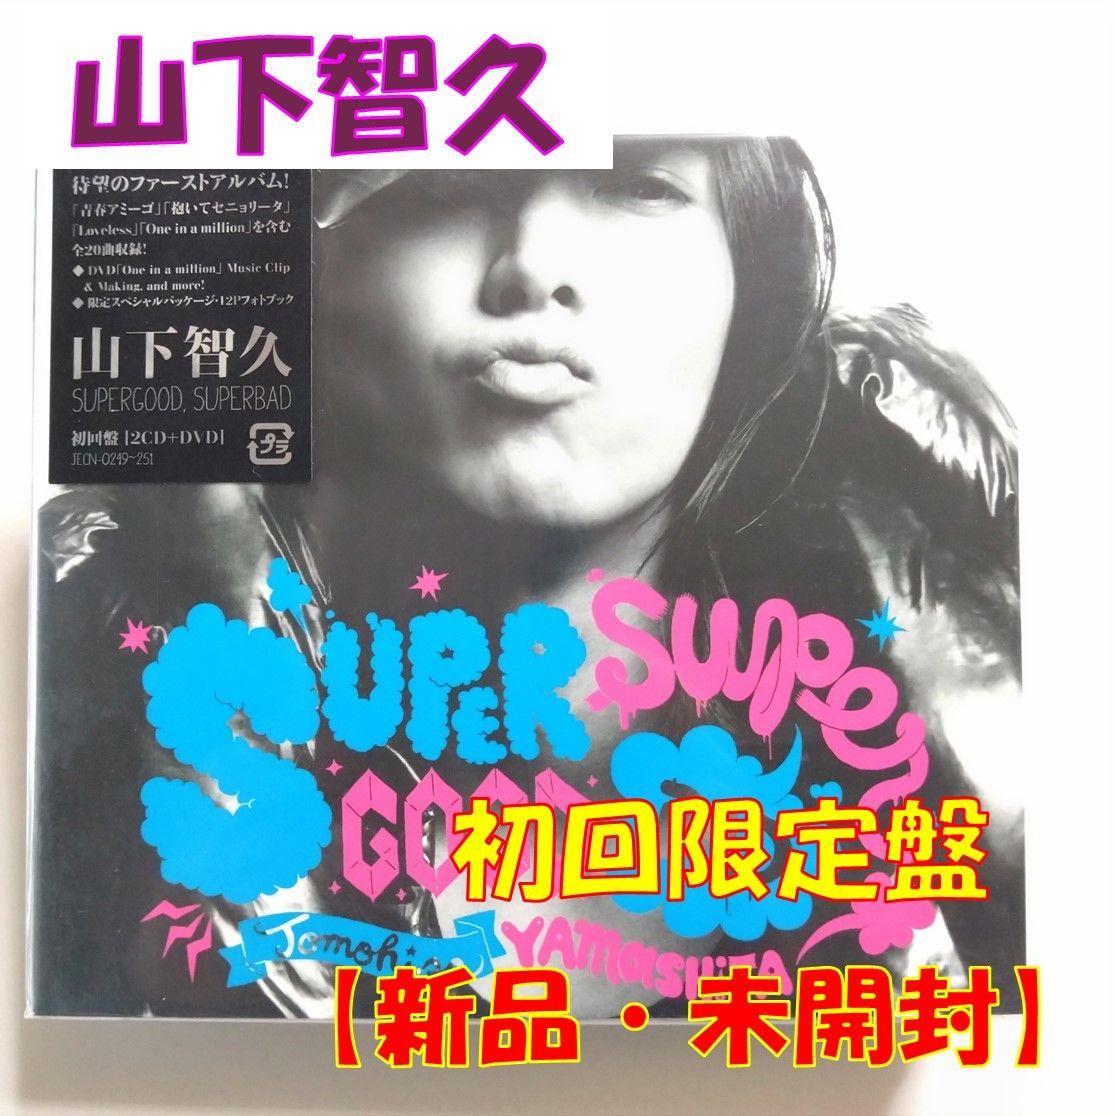 山下智久 SUPERGOOD,SUPERBAD ファーストアルバム 初回盤 - 人、グループ別